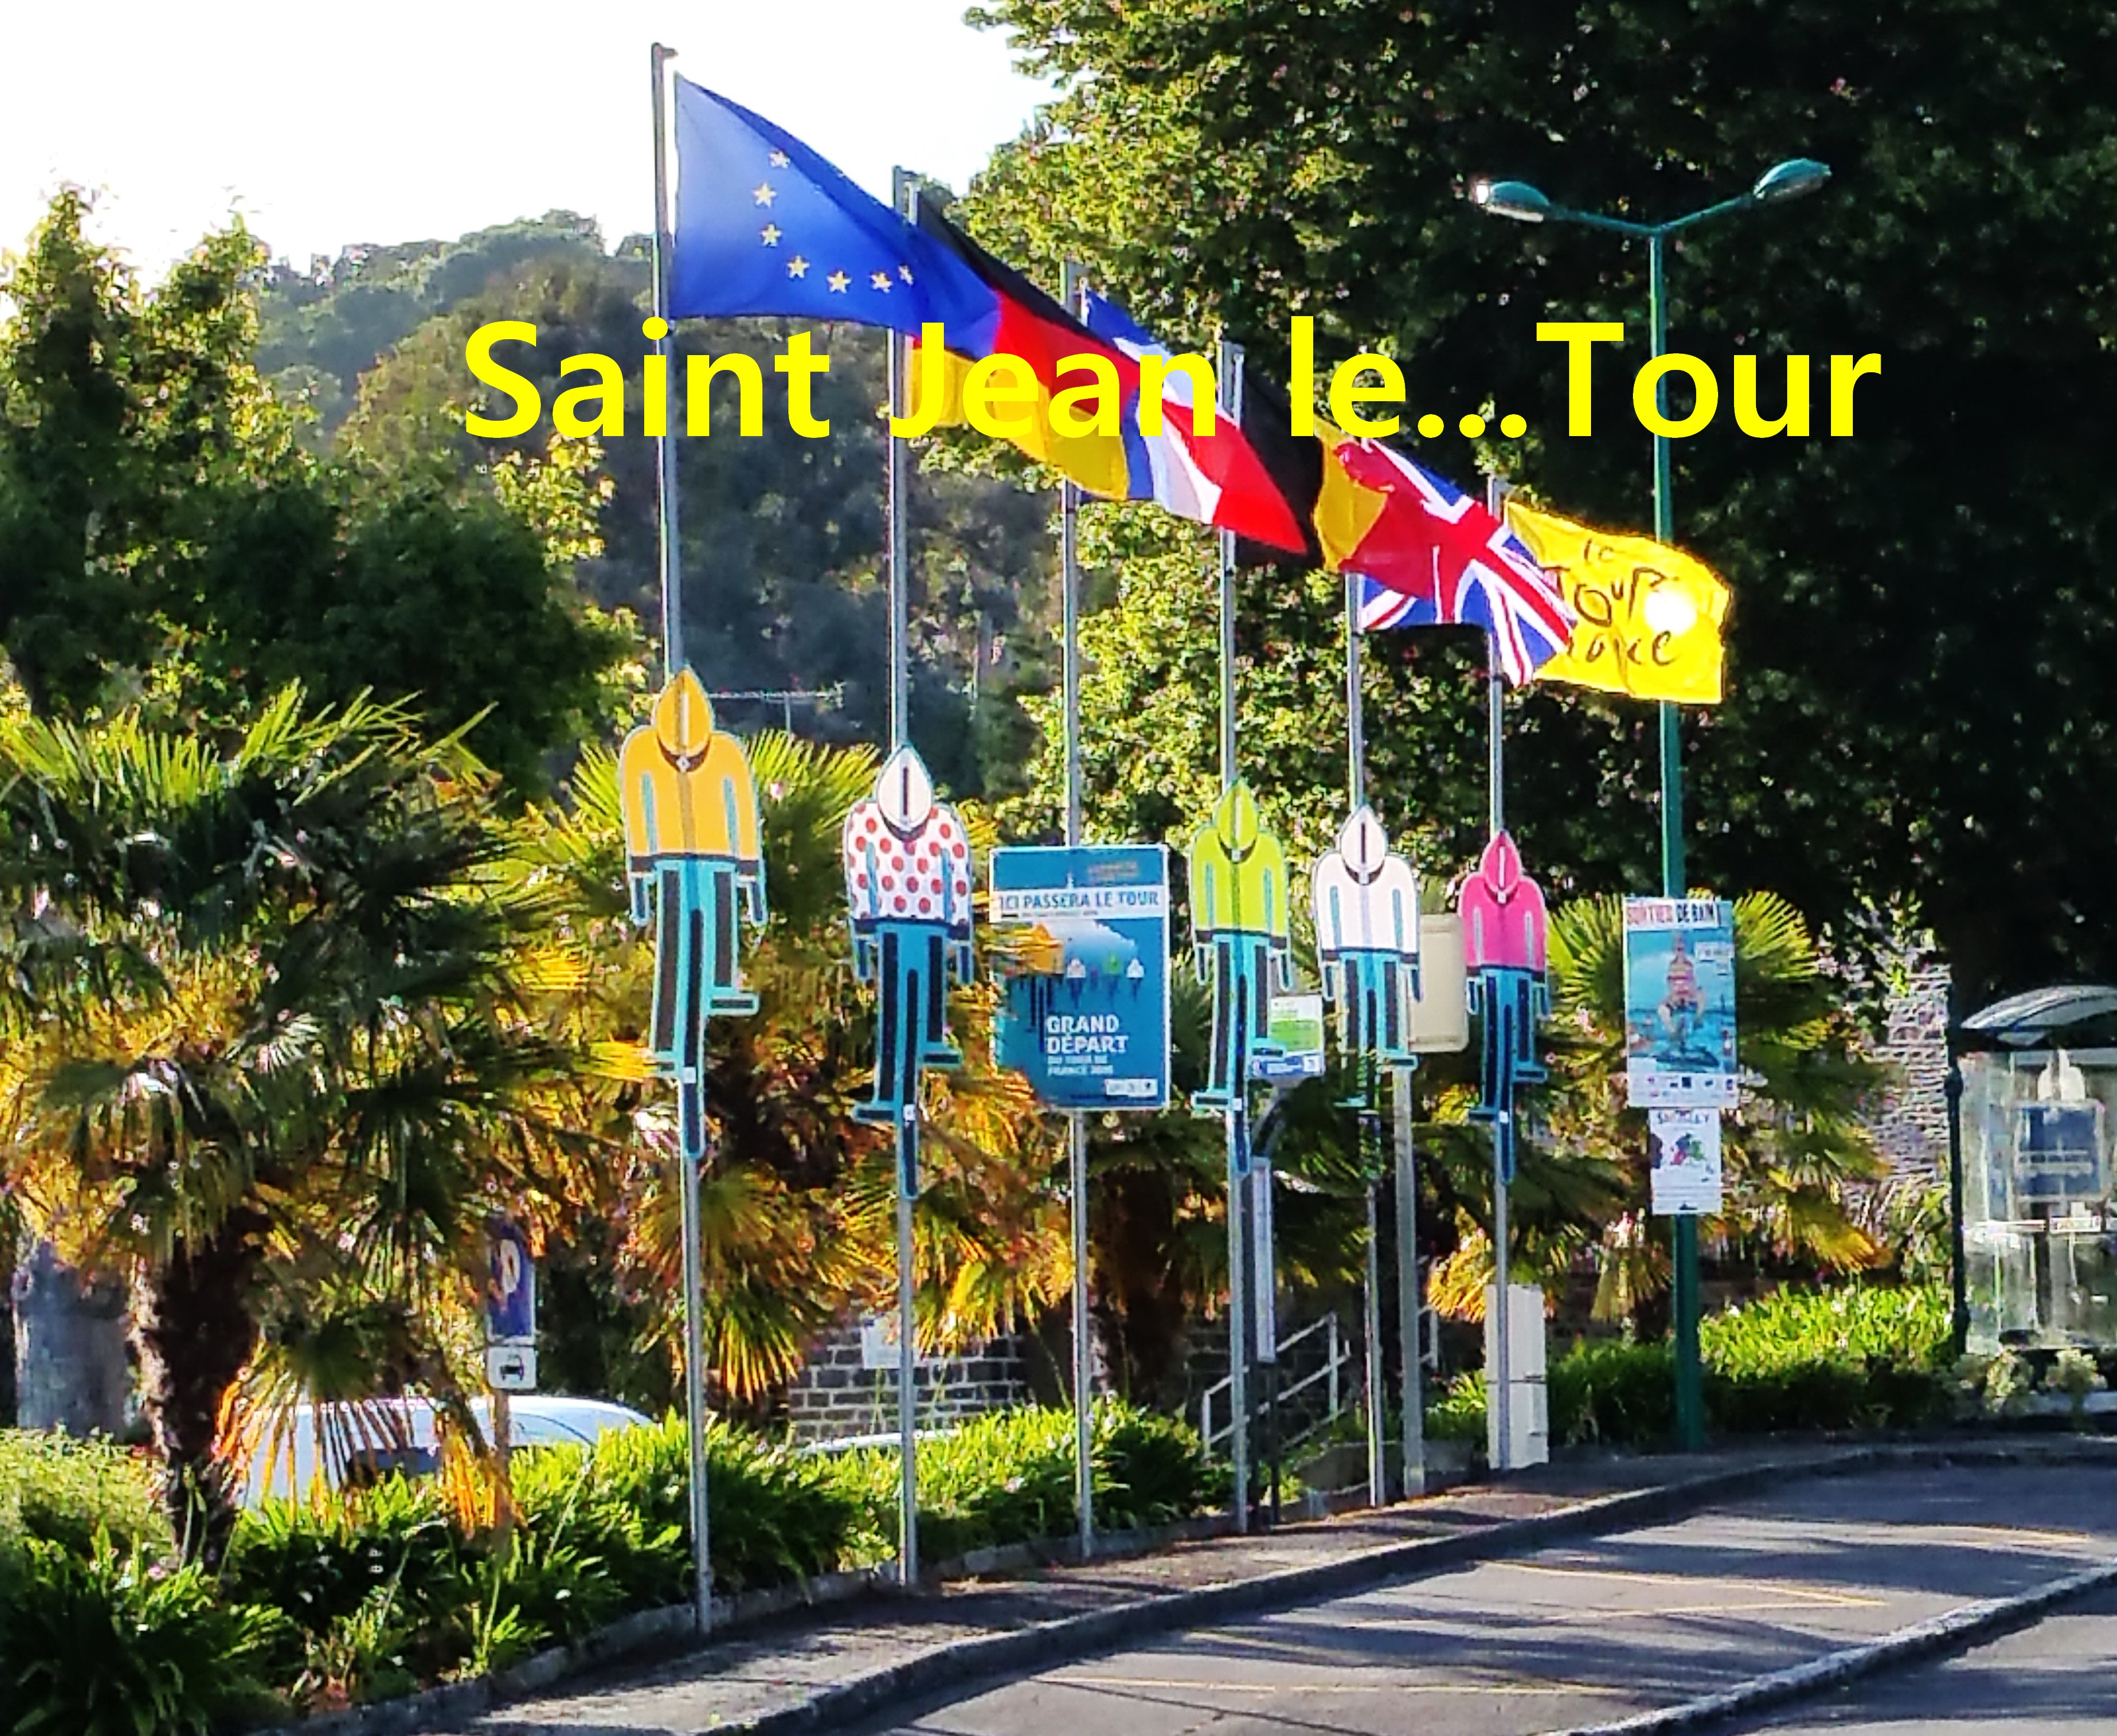 Saint Jean le Thomas sur la route du Tour 2016.